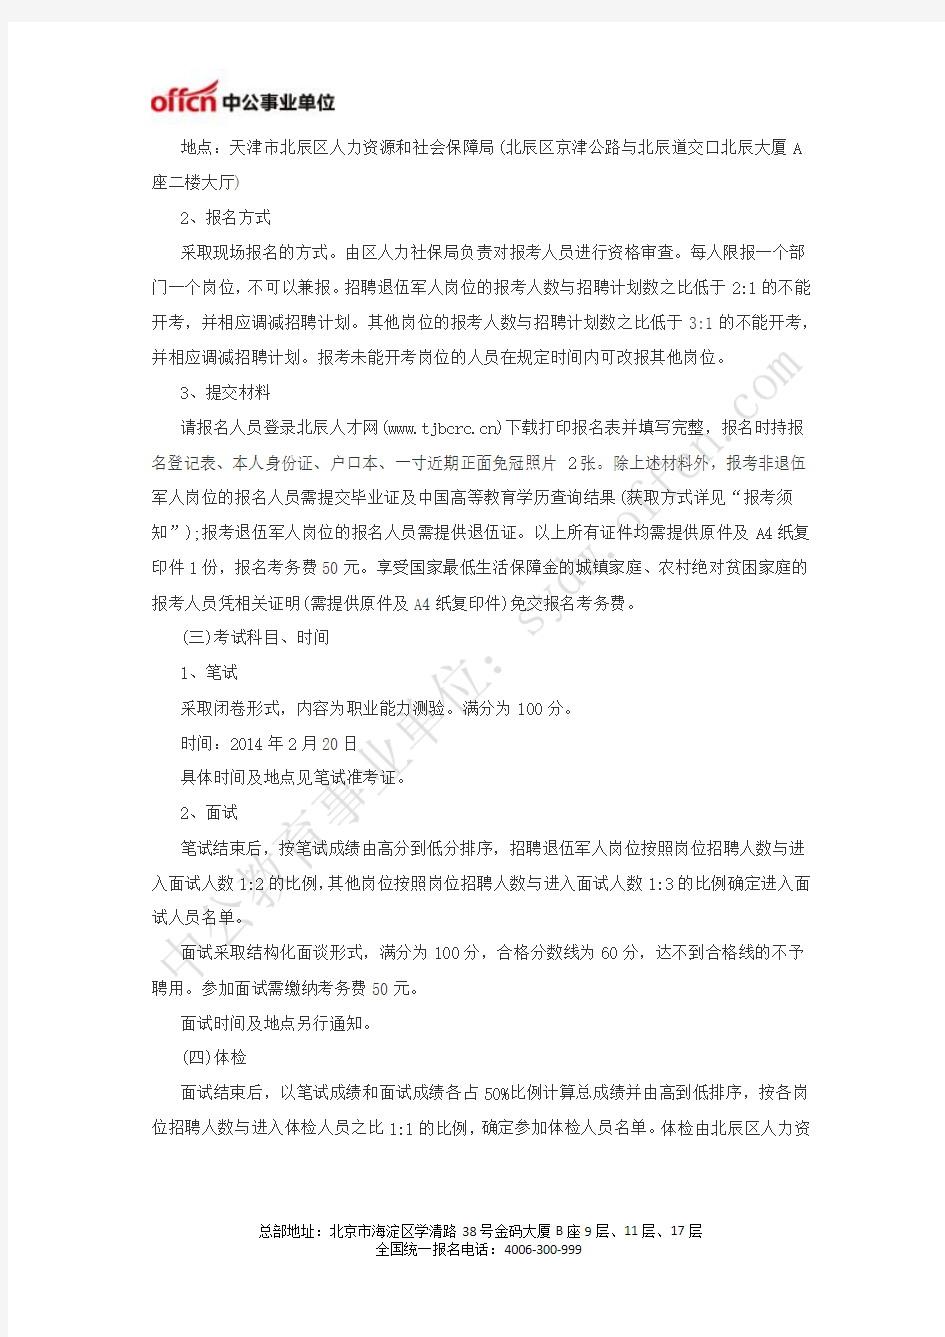 北辰人才网  2014年天津北辰区事业单位招聘88人